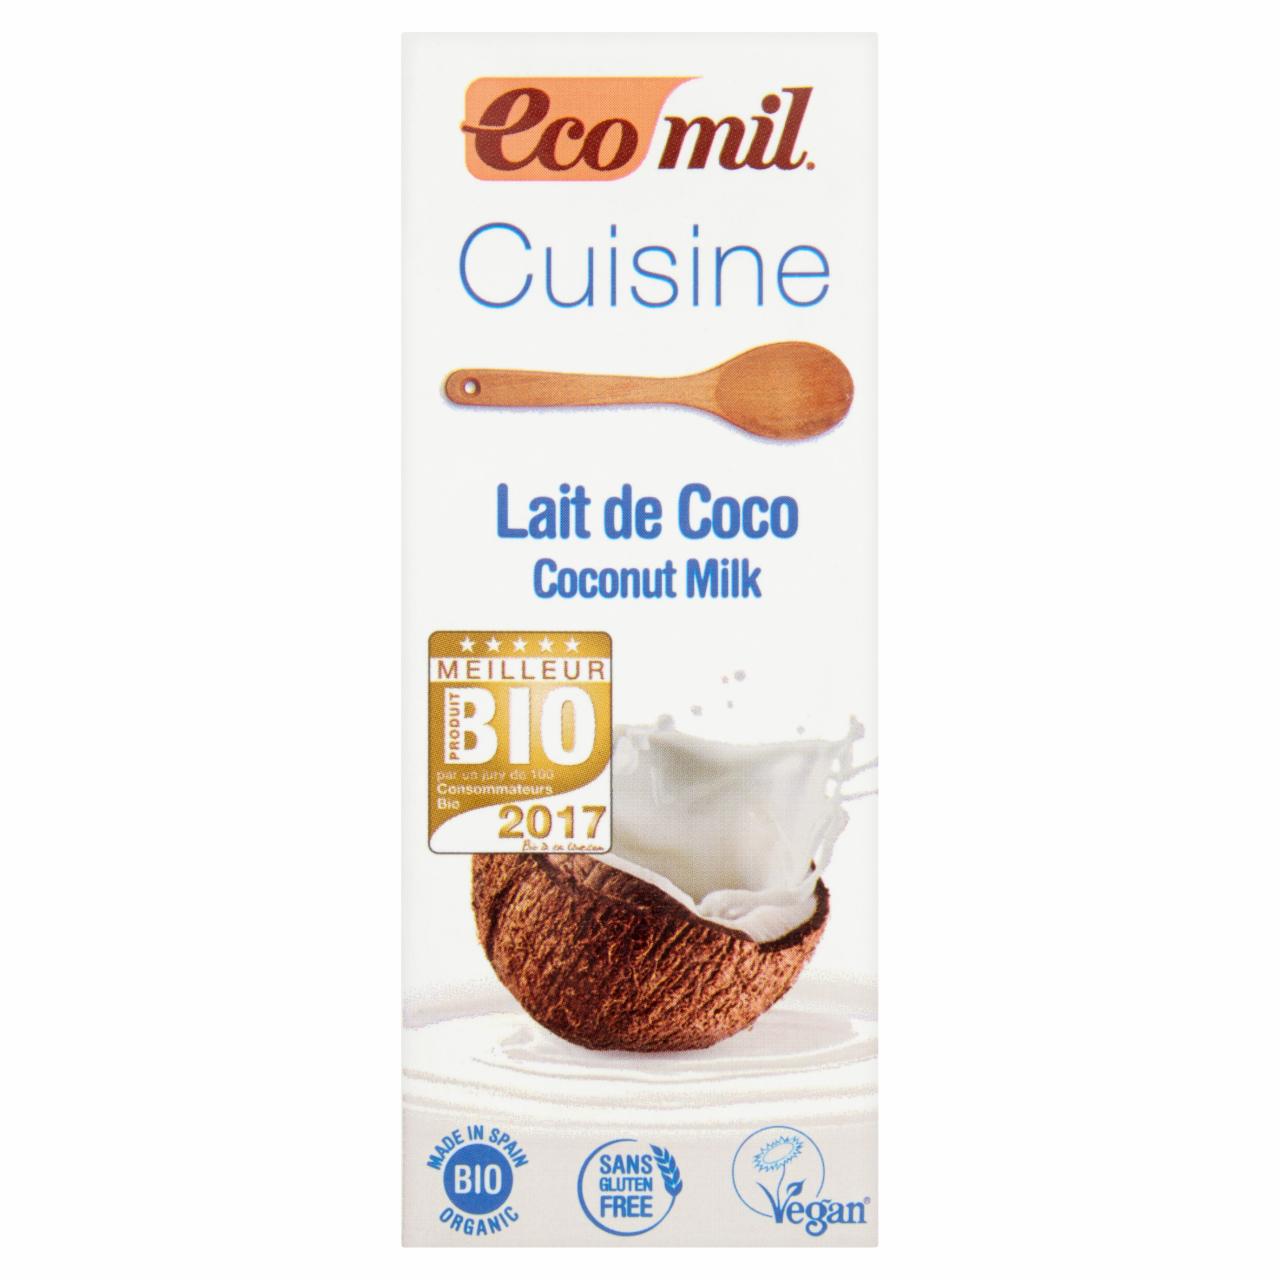 Képek - EcoMil Cuisine BIO konyhai készült kókusztejjel 200 ml